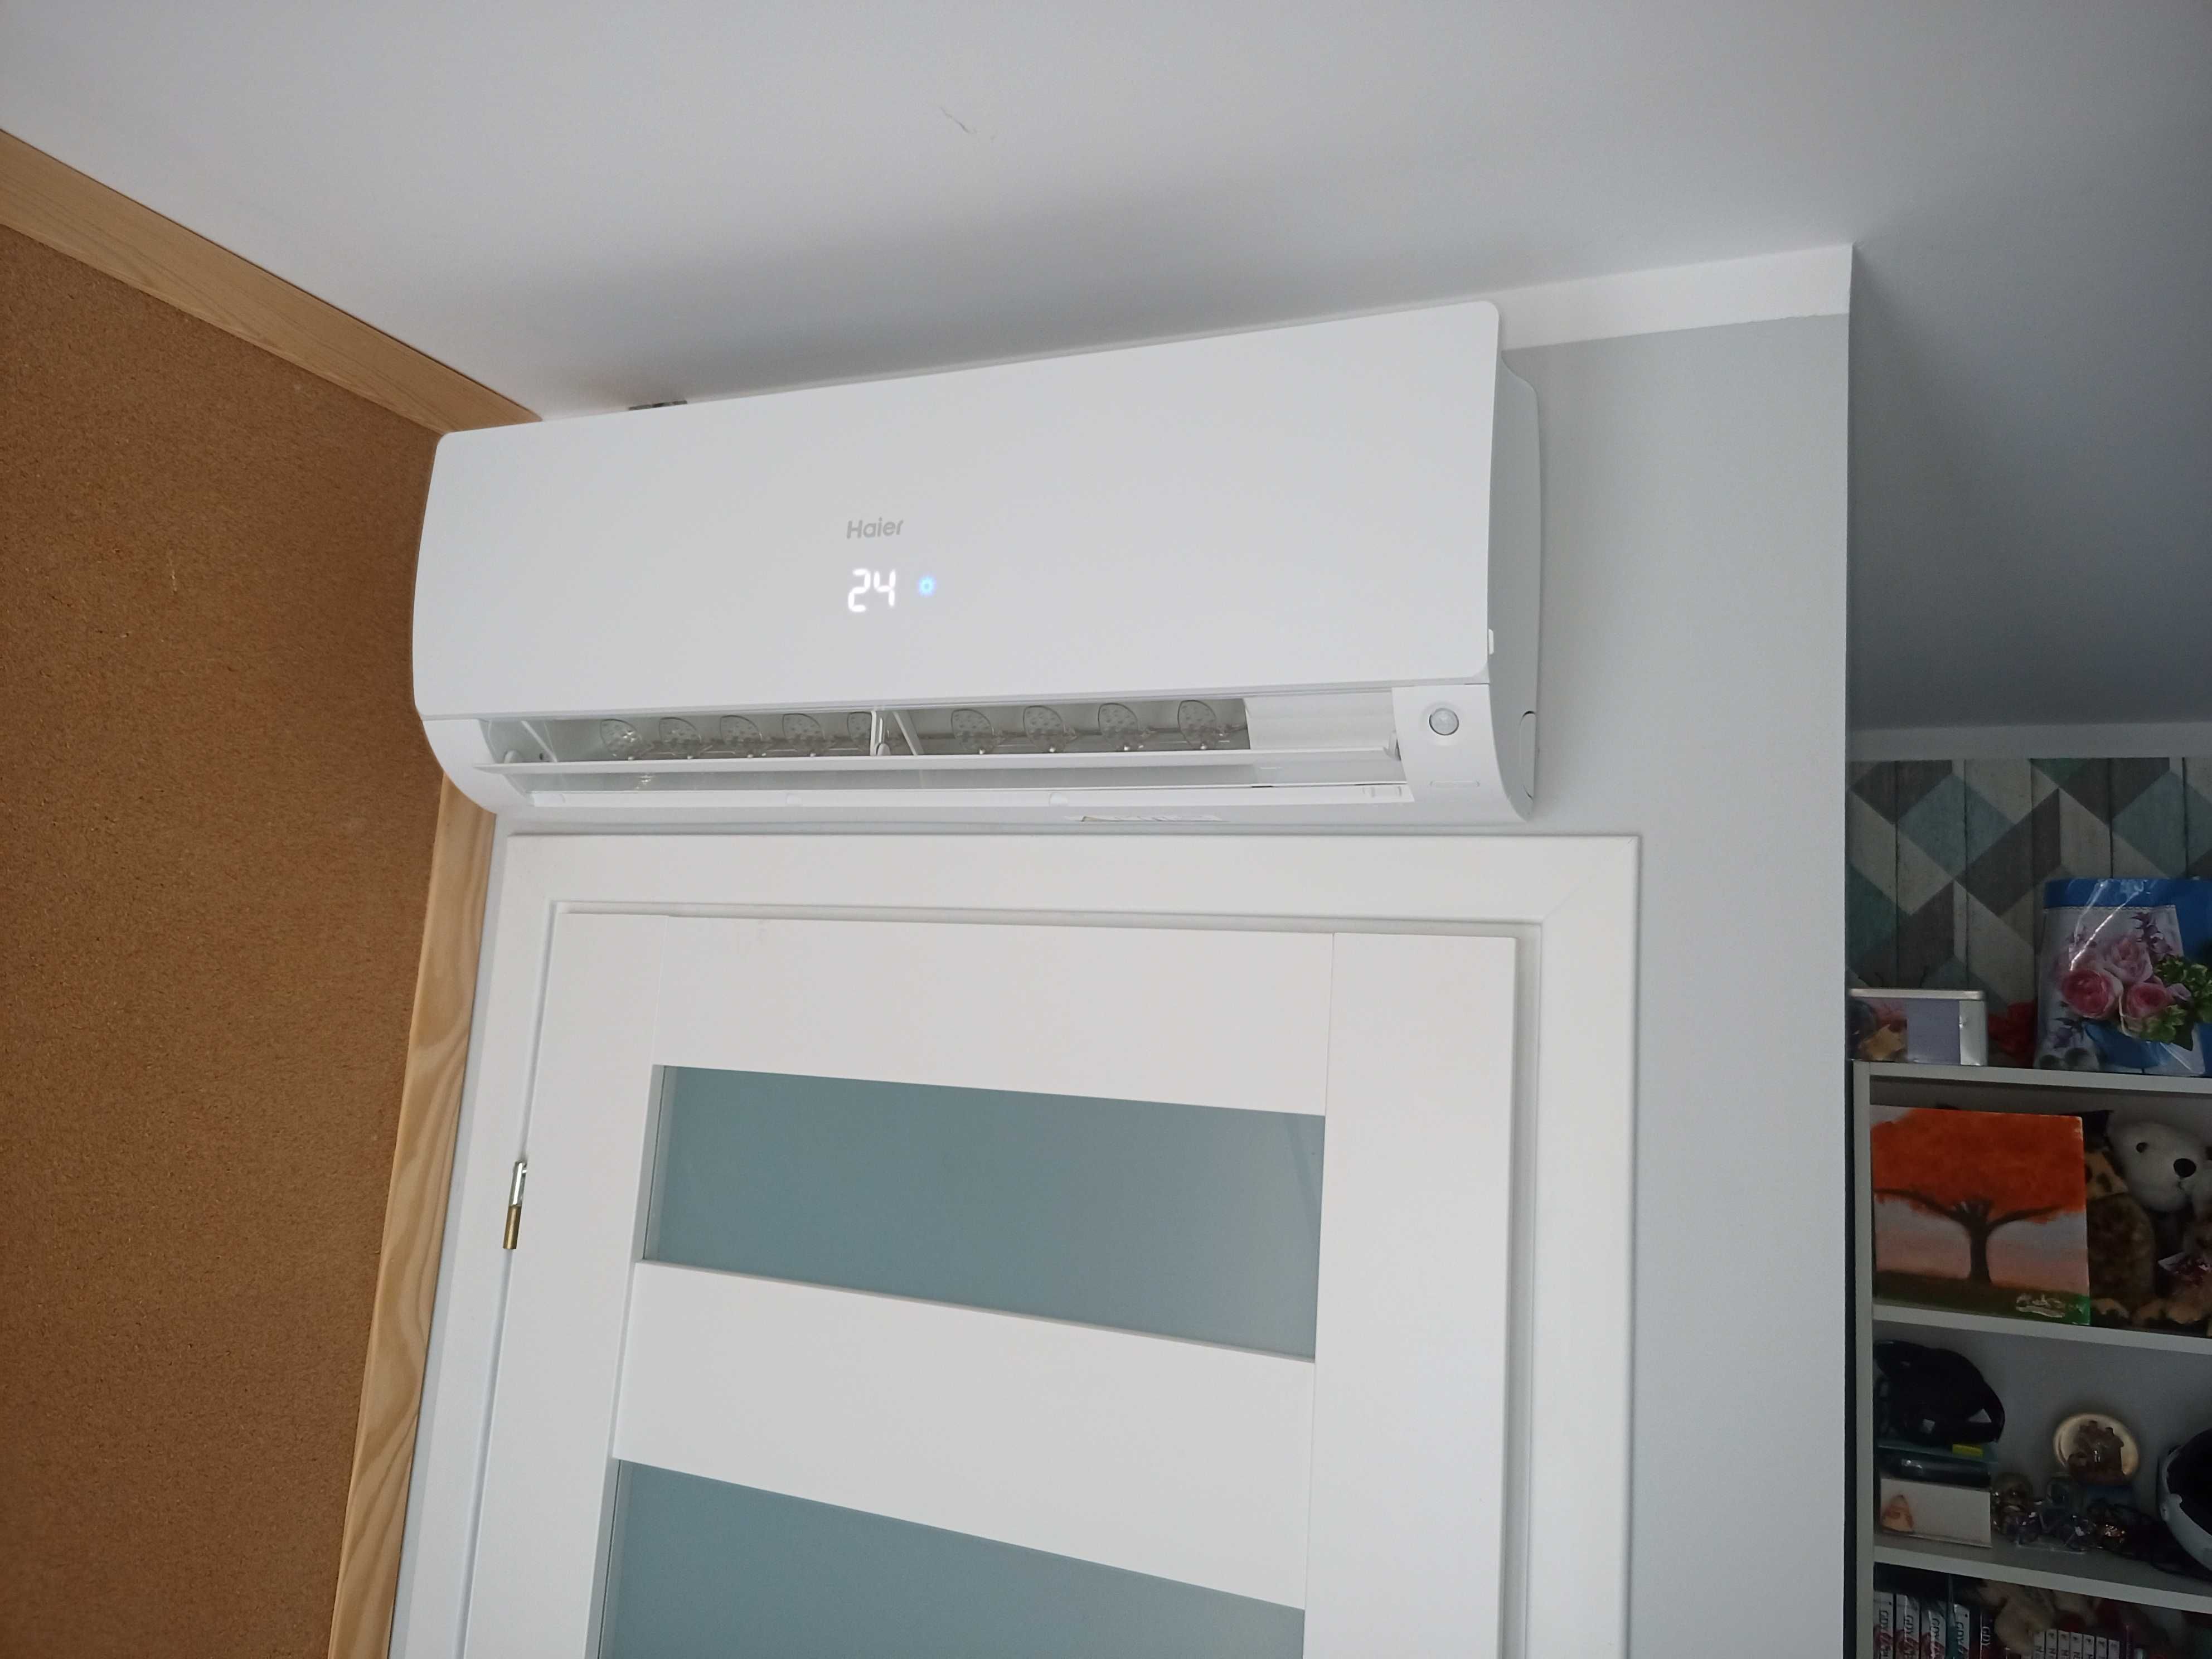 Montaż klimatyzacji Klimatyzacja do domu biura / split multisplit VRF